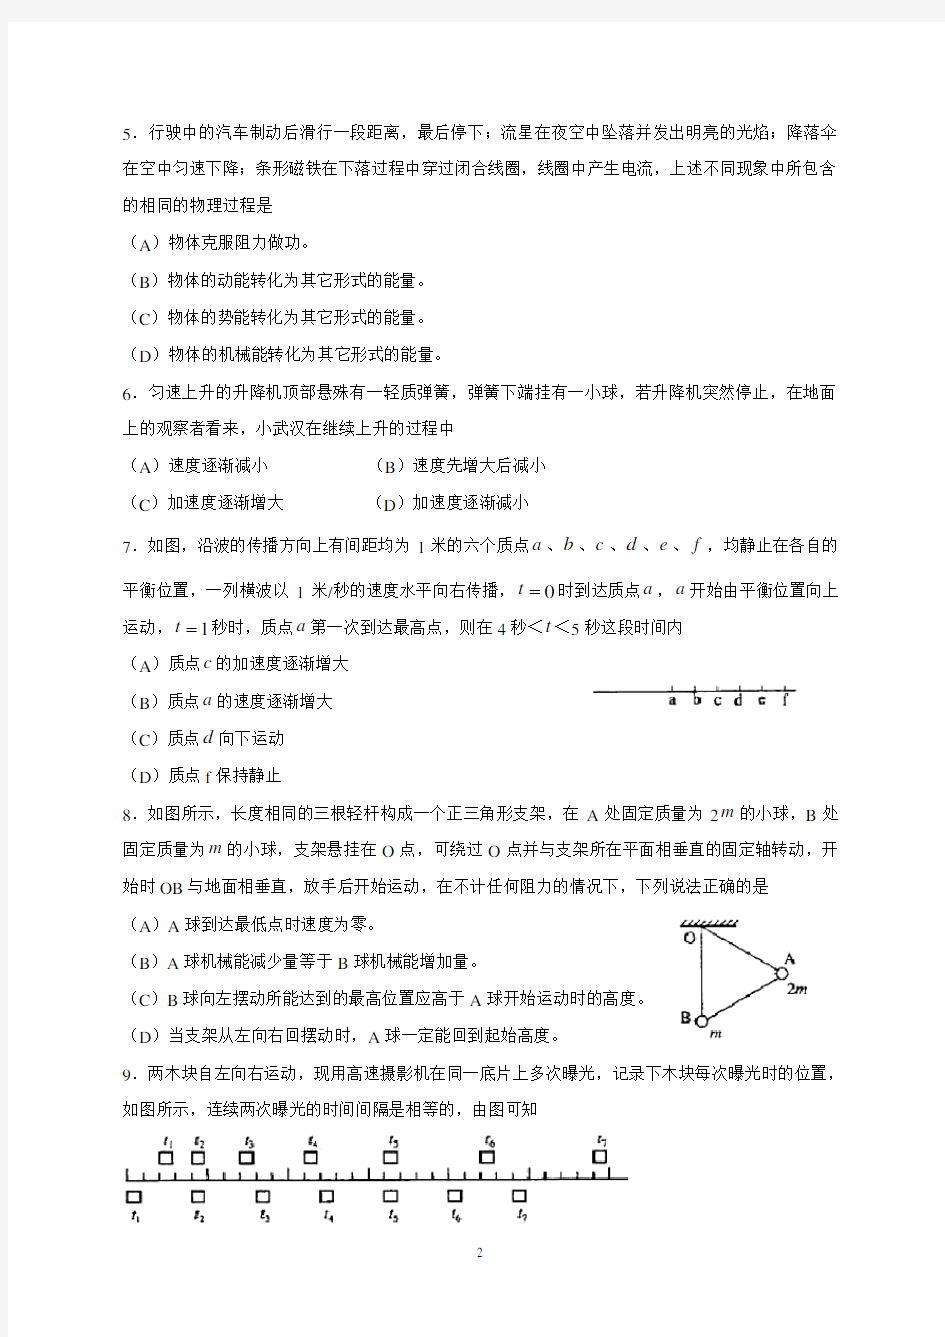 (完整版)2000年高考上海物理试题(含答案)